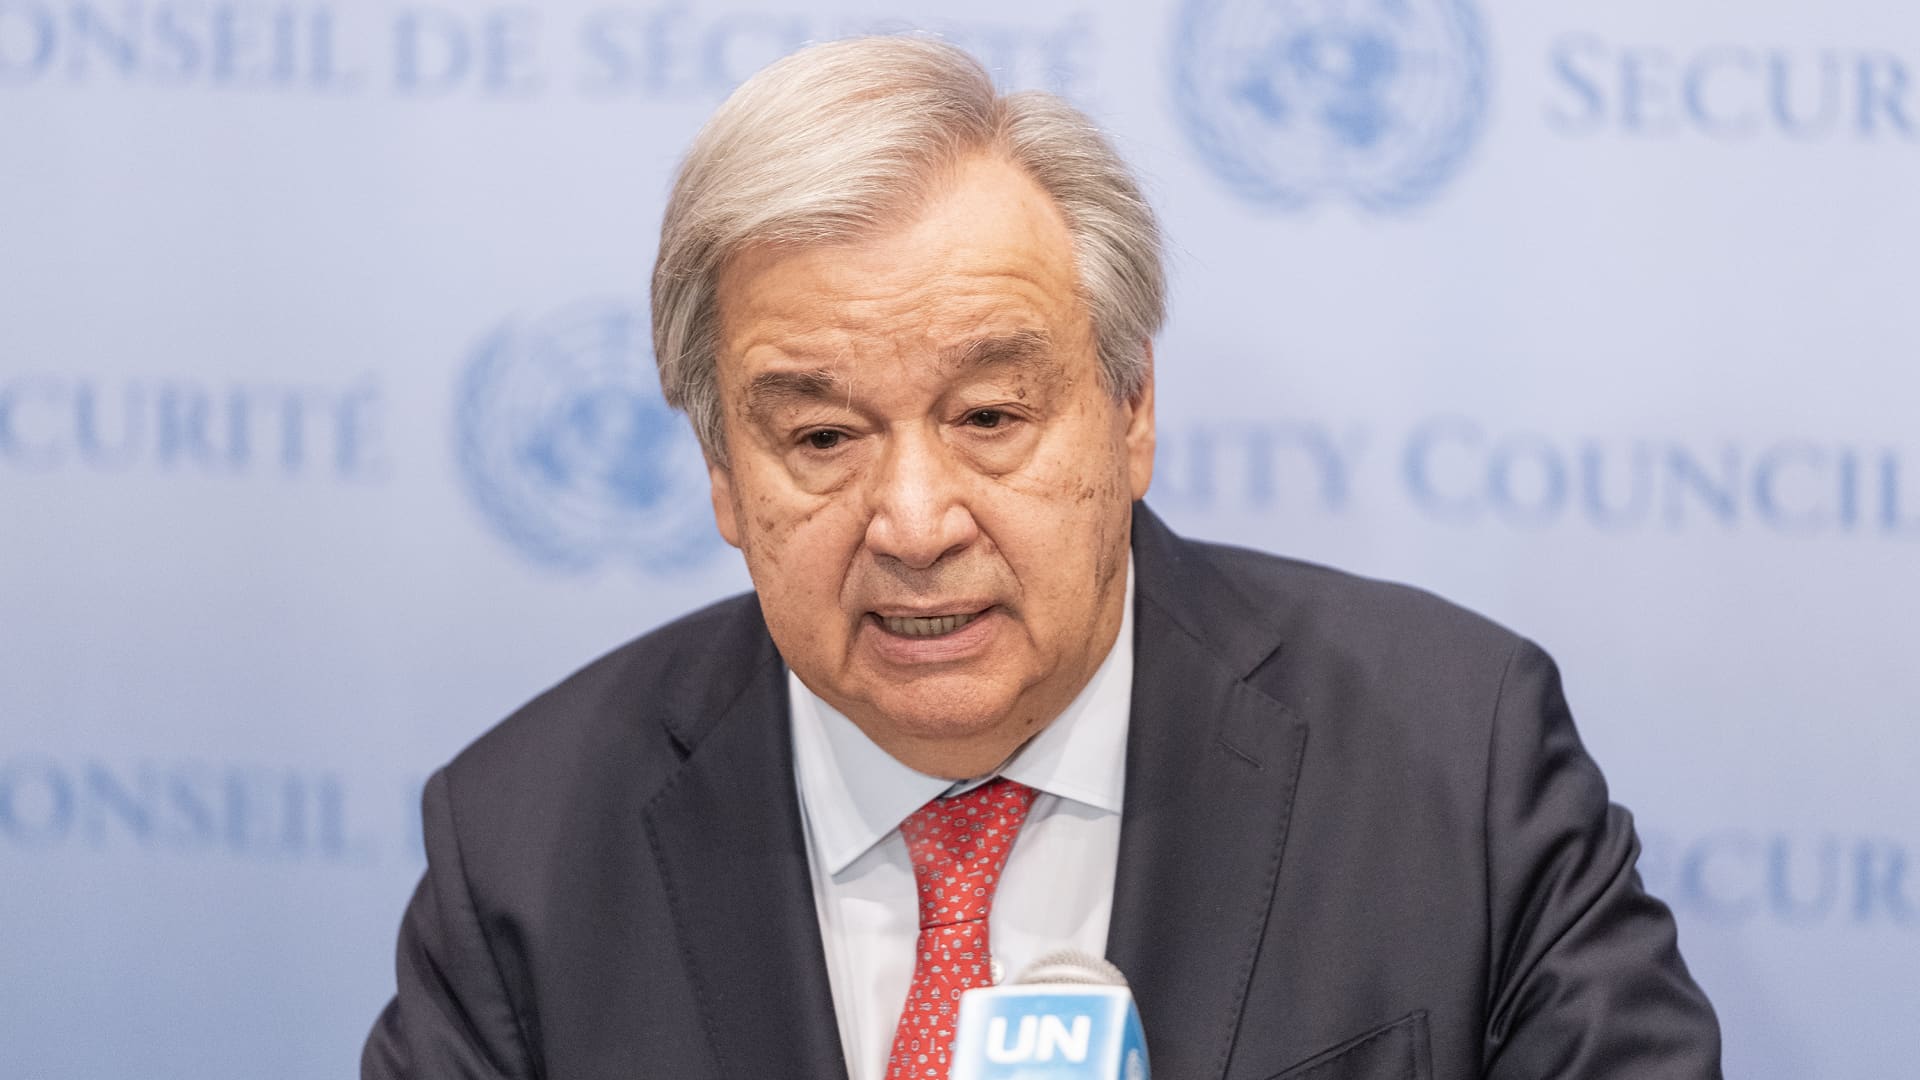 De secretaris-generaal van de VN roept op tot een einde aan de 7 biljoen dollar aan subsidies voor fossiele brandstoffen